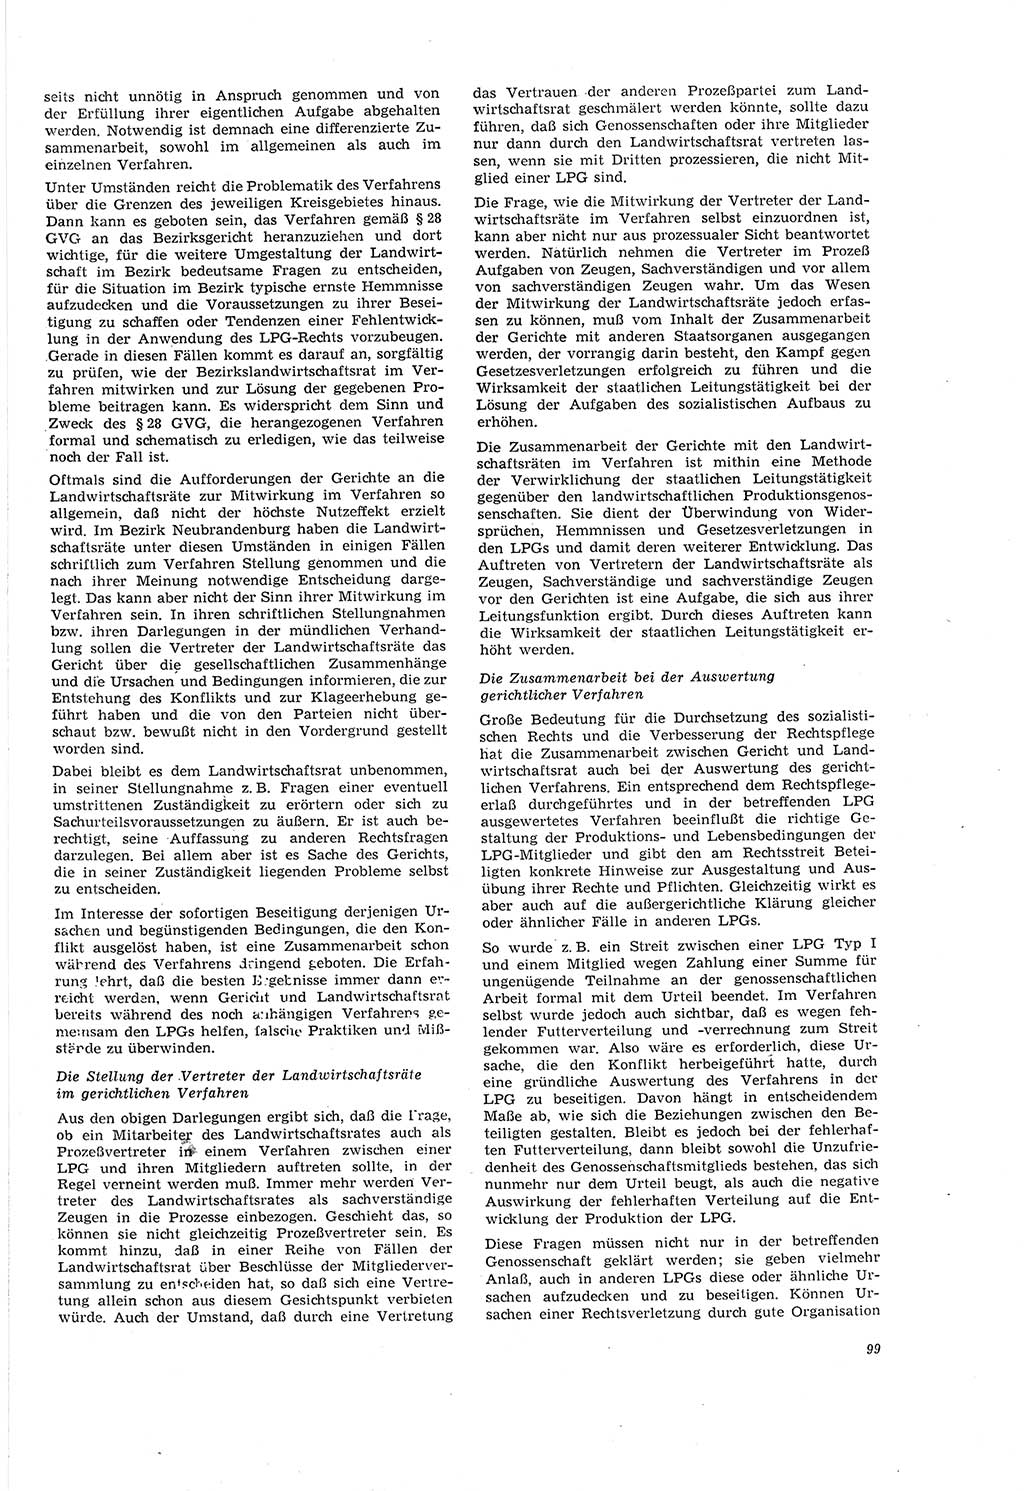 Neue Justiz (NJ), Zeitschrift für Recht und Rechtswissenschaft [Deutsche Demokratische Republik (DDR)], 20. Jahrgang 1966, Seite 99 (NJ DDR 1966, S. 99)